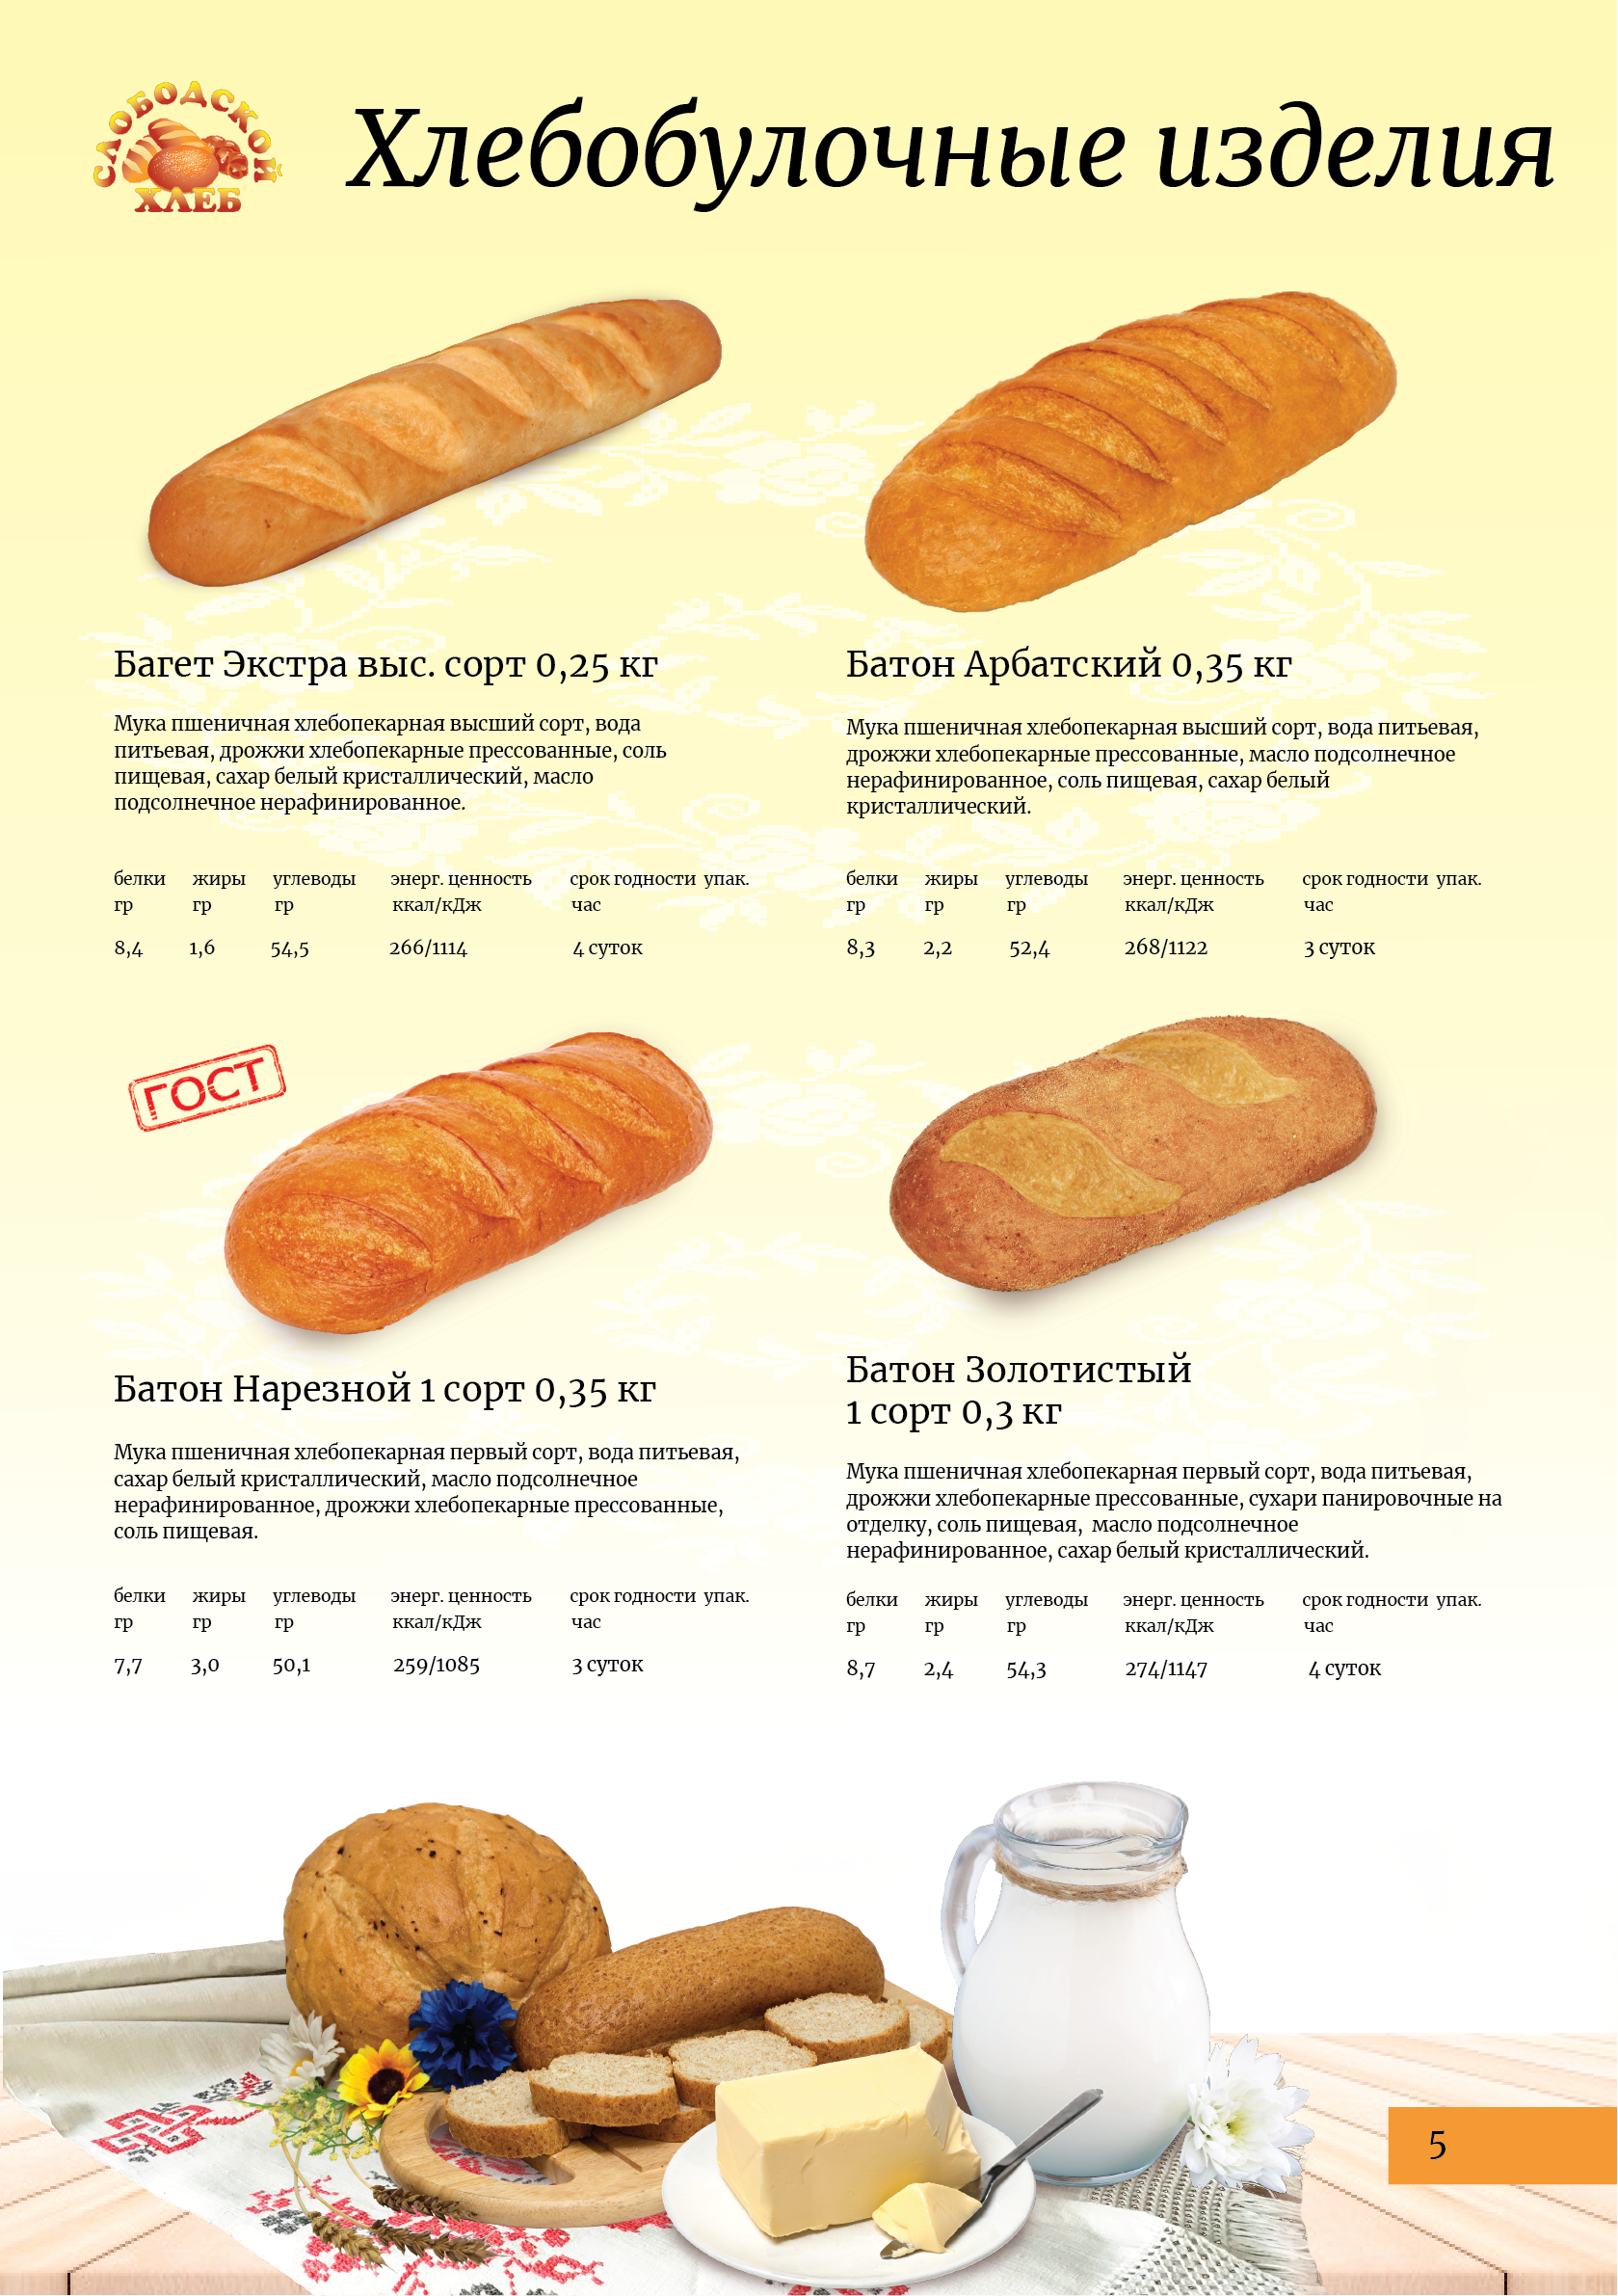 Сколько калорий в белом хлебе 100 грамм. Формы хлебобулочных изделий. Калорий в батоне хлеба. Калорий в батоне белого хлеба. Калорийность батона белого.